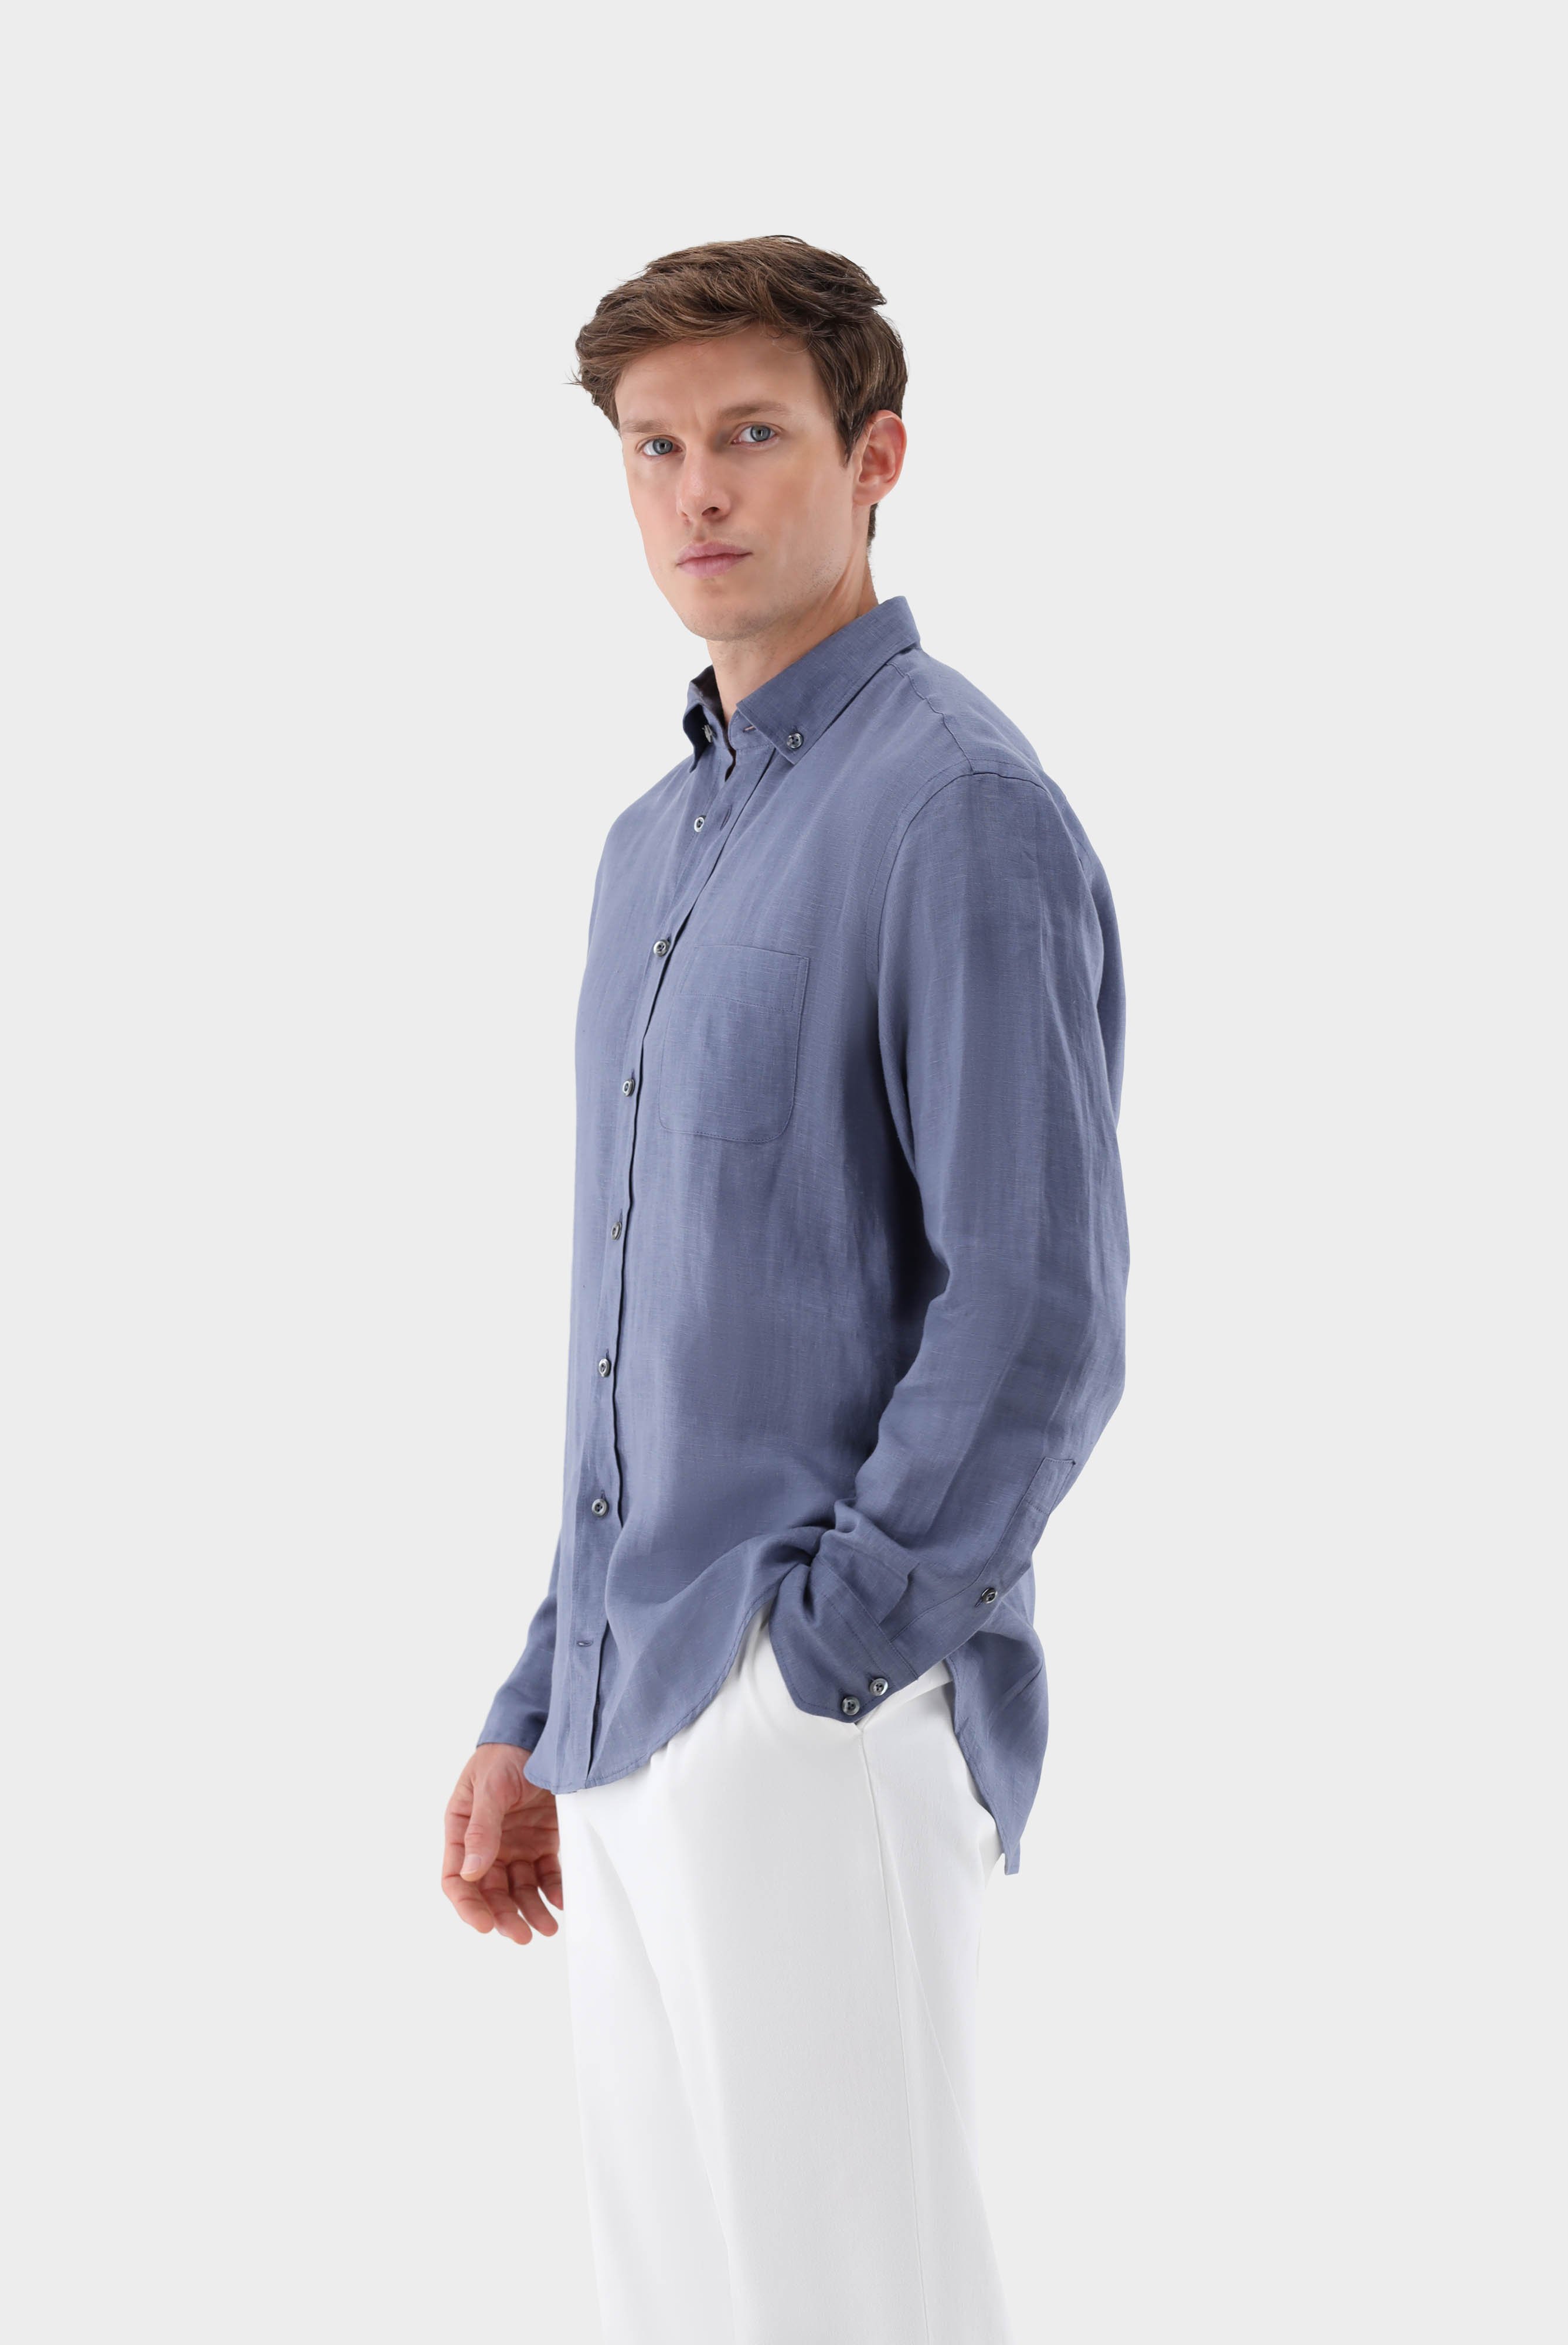 Linen Button-Down Collar Shirt Tailor Fit